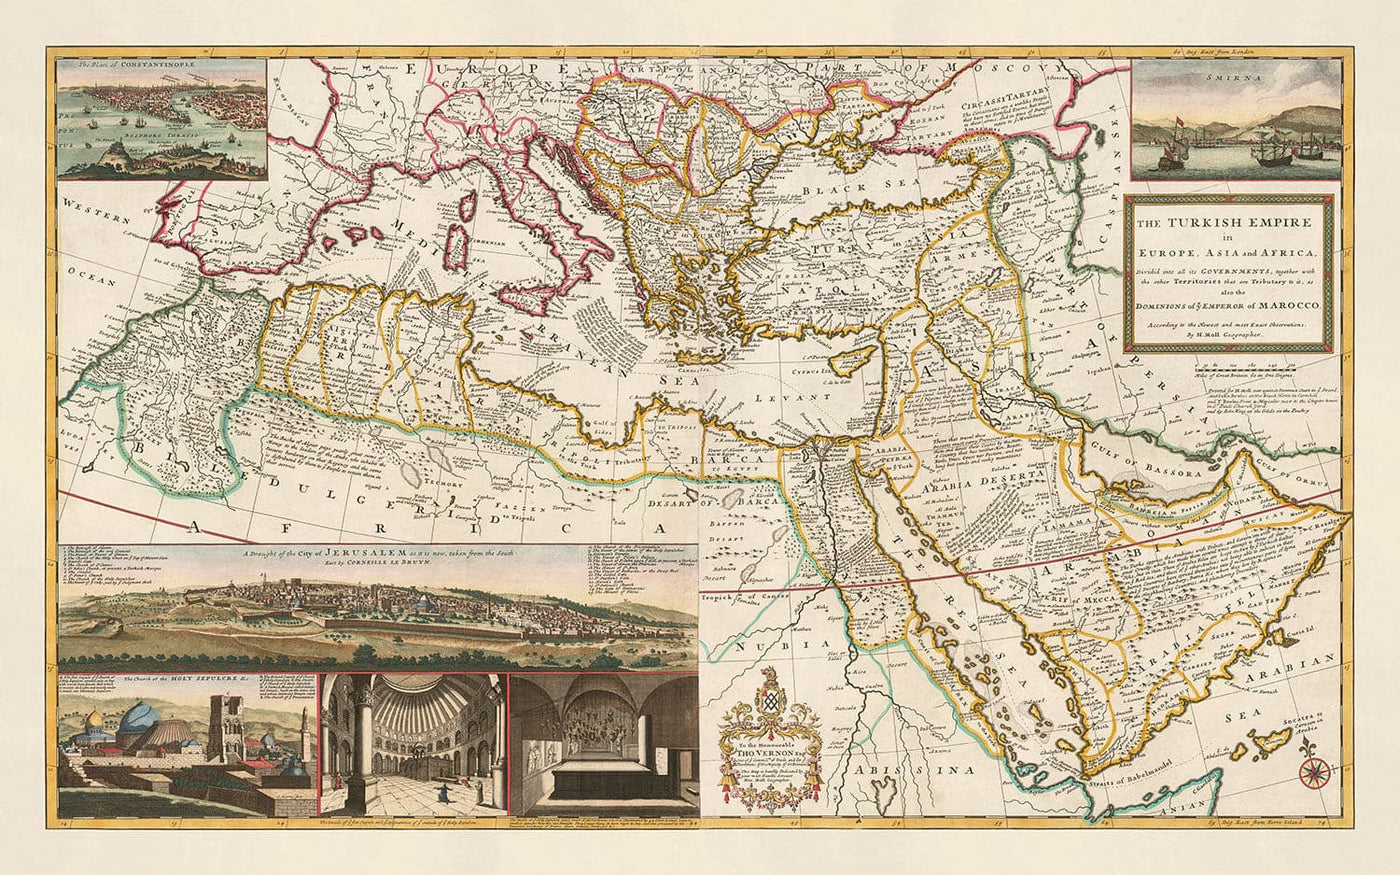 Alte Karte des Osmanischen Reiches, 1714 von Herman Moll - Türkisches Empire - Süda, Nordafrika, Balkan, Naher Osten